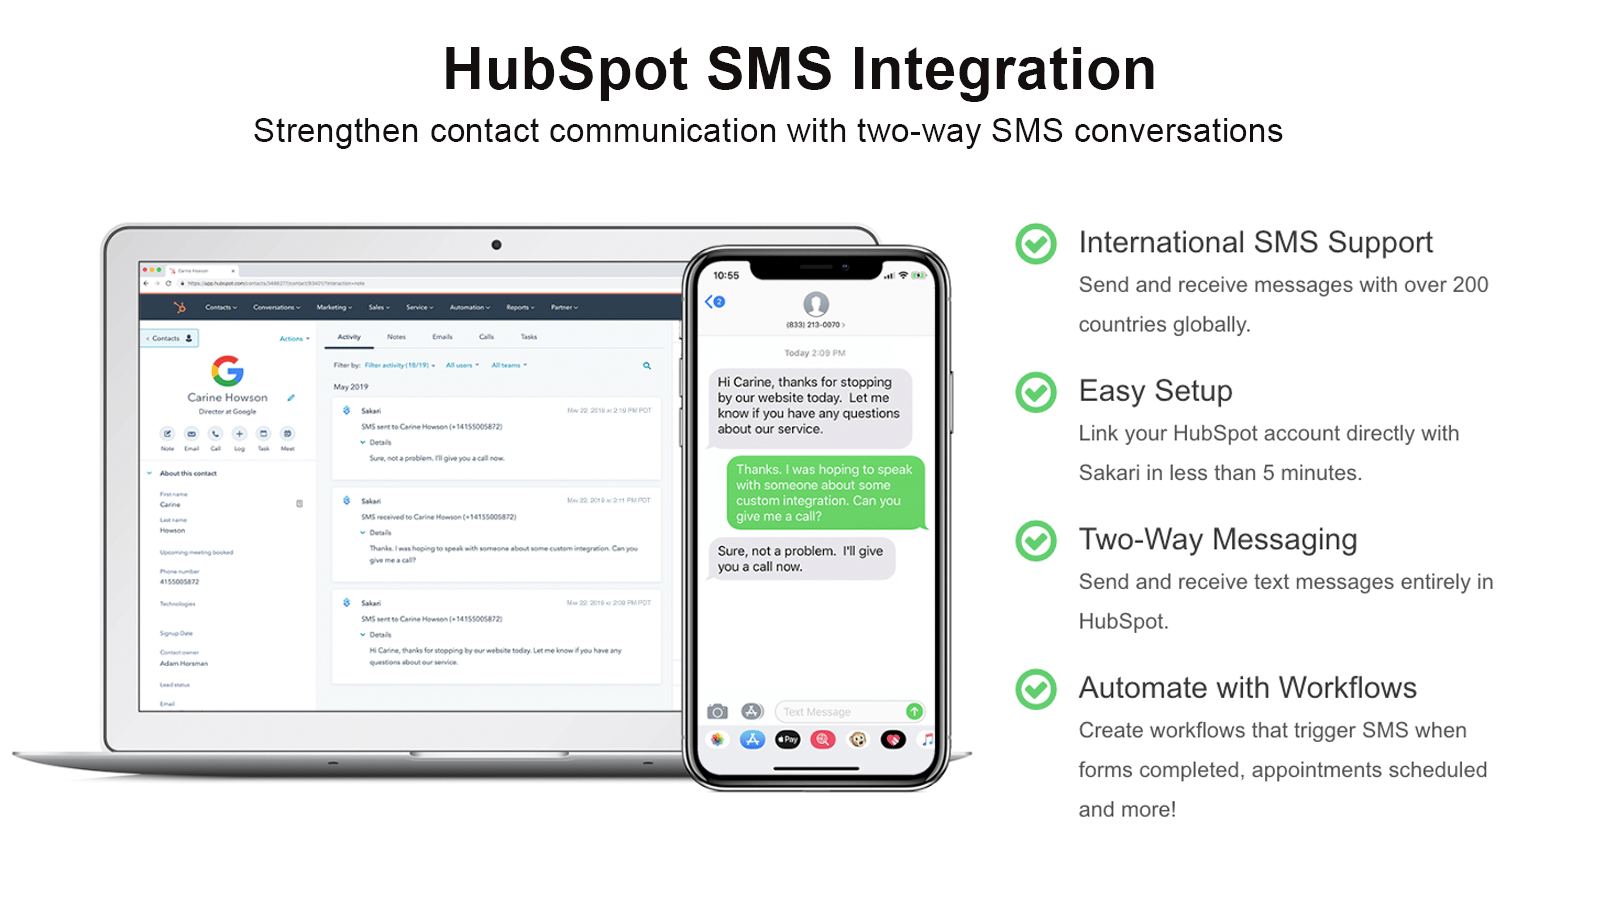 HubSpot SMS